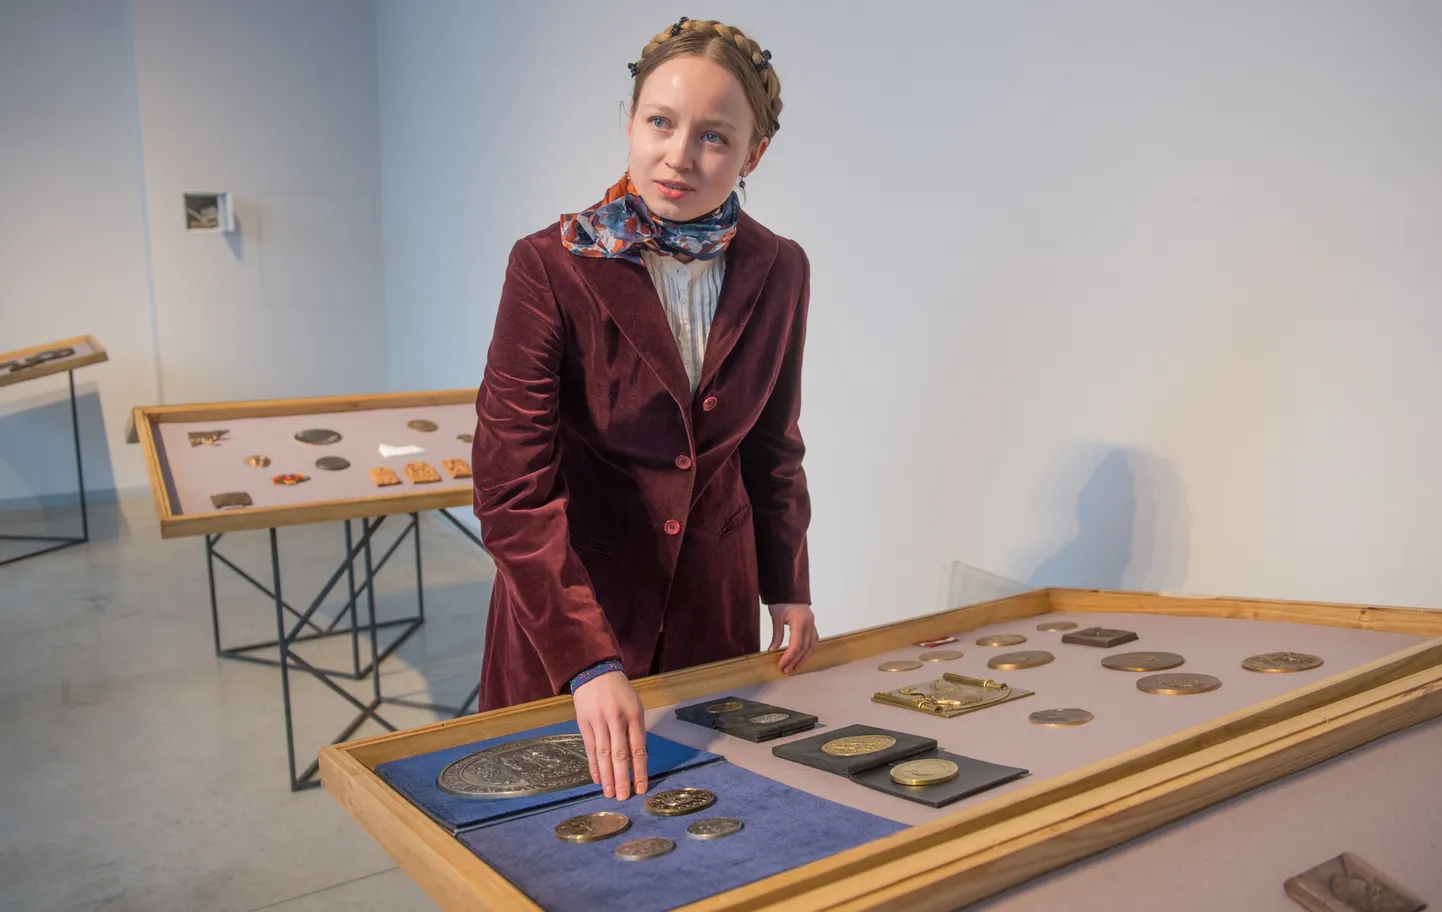 Lina Kalinauskaitė tutvustab näitust. Parema käe sõrmeotsad on ta enda 
uusimal medalil, mille lähedale on välja pandud tema isa Juozas 
Kalinauskase loomingut.